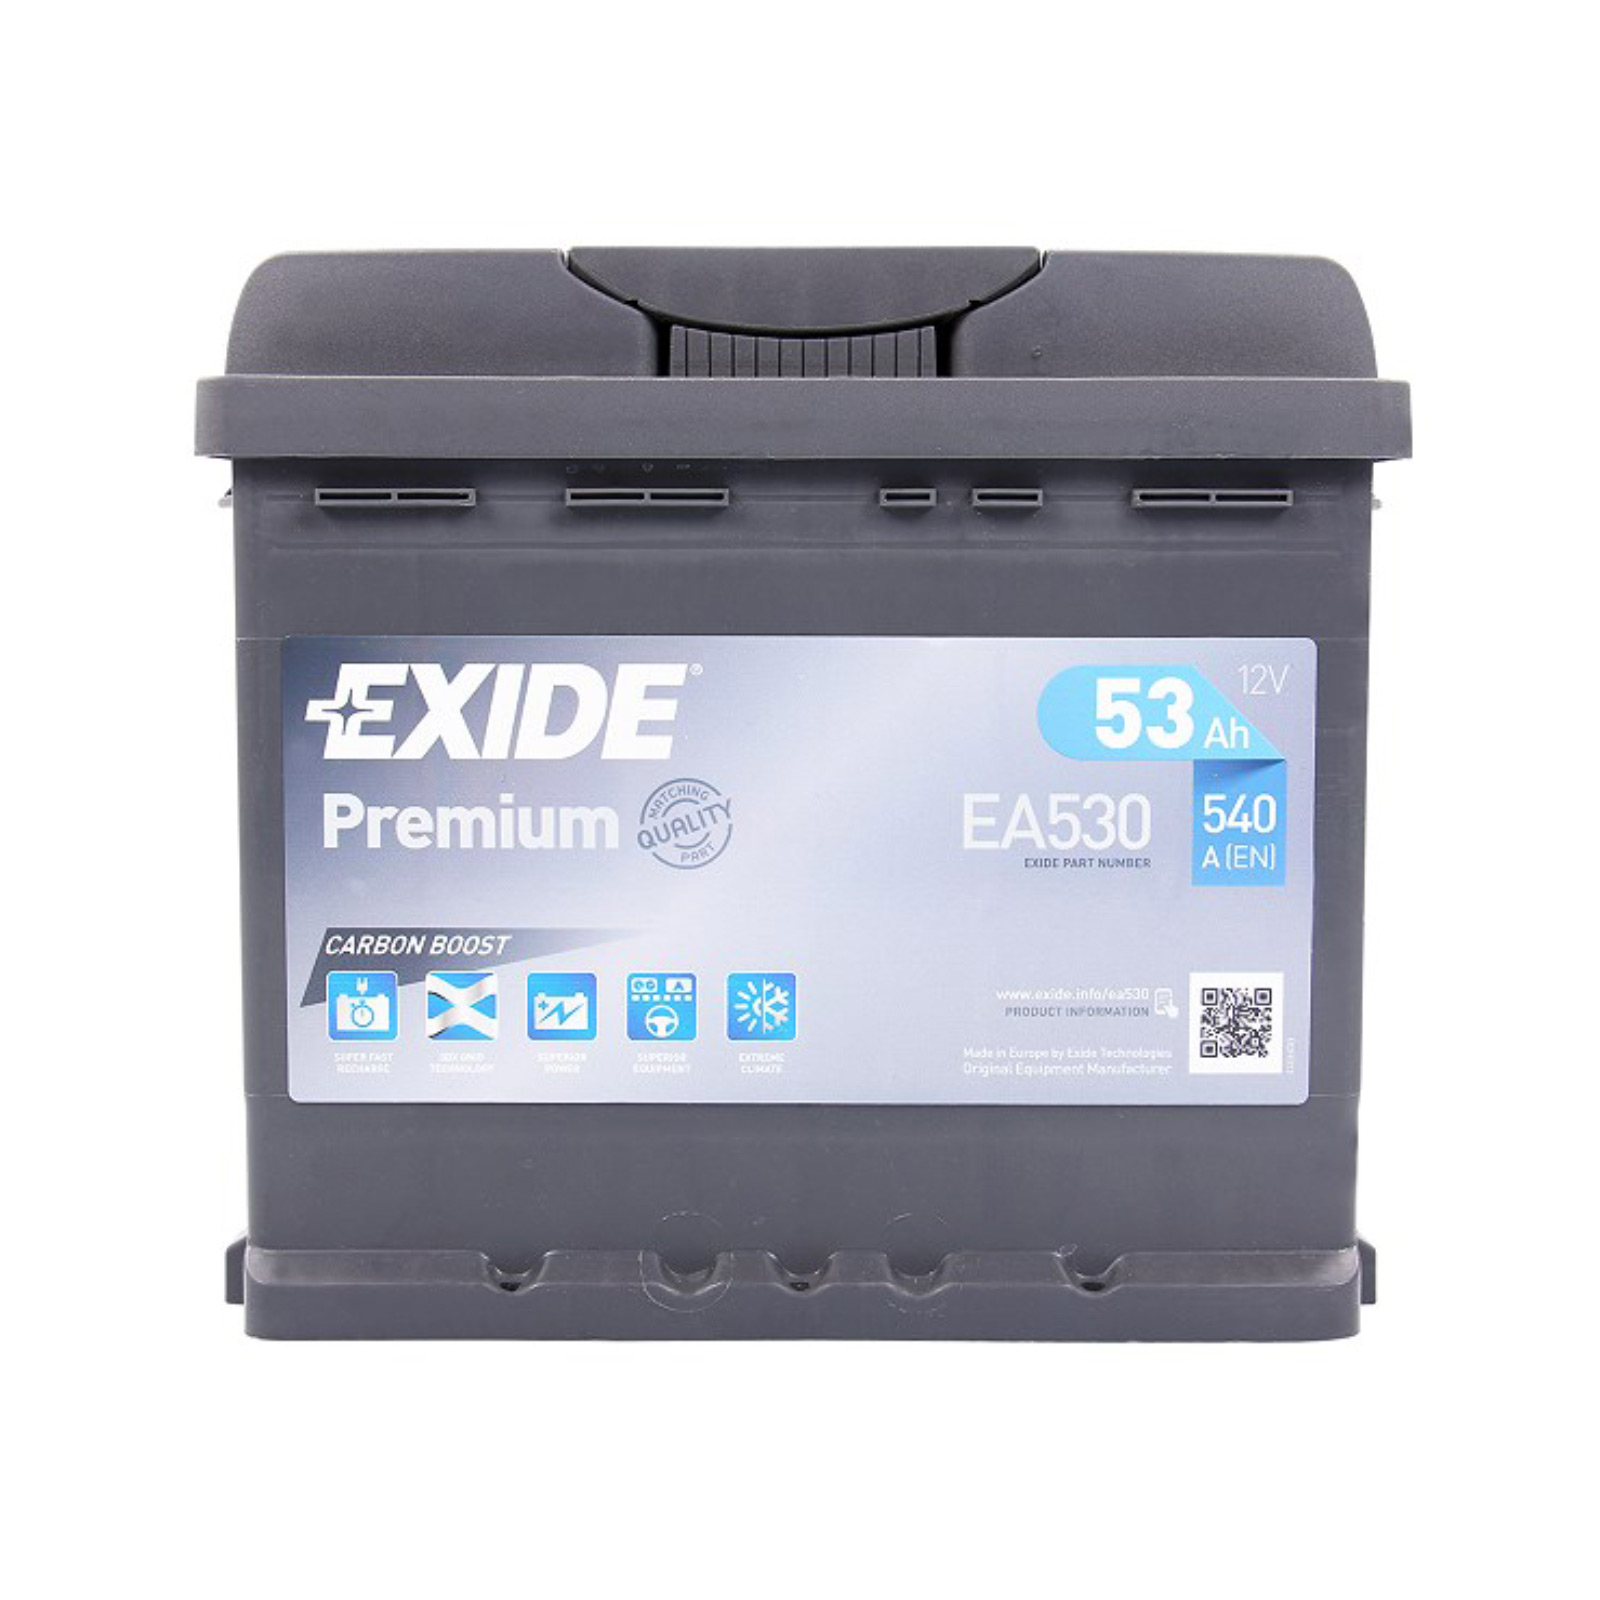 EXIDEA530